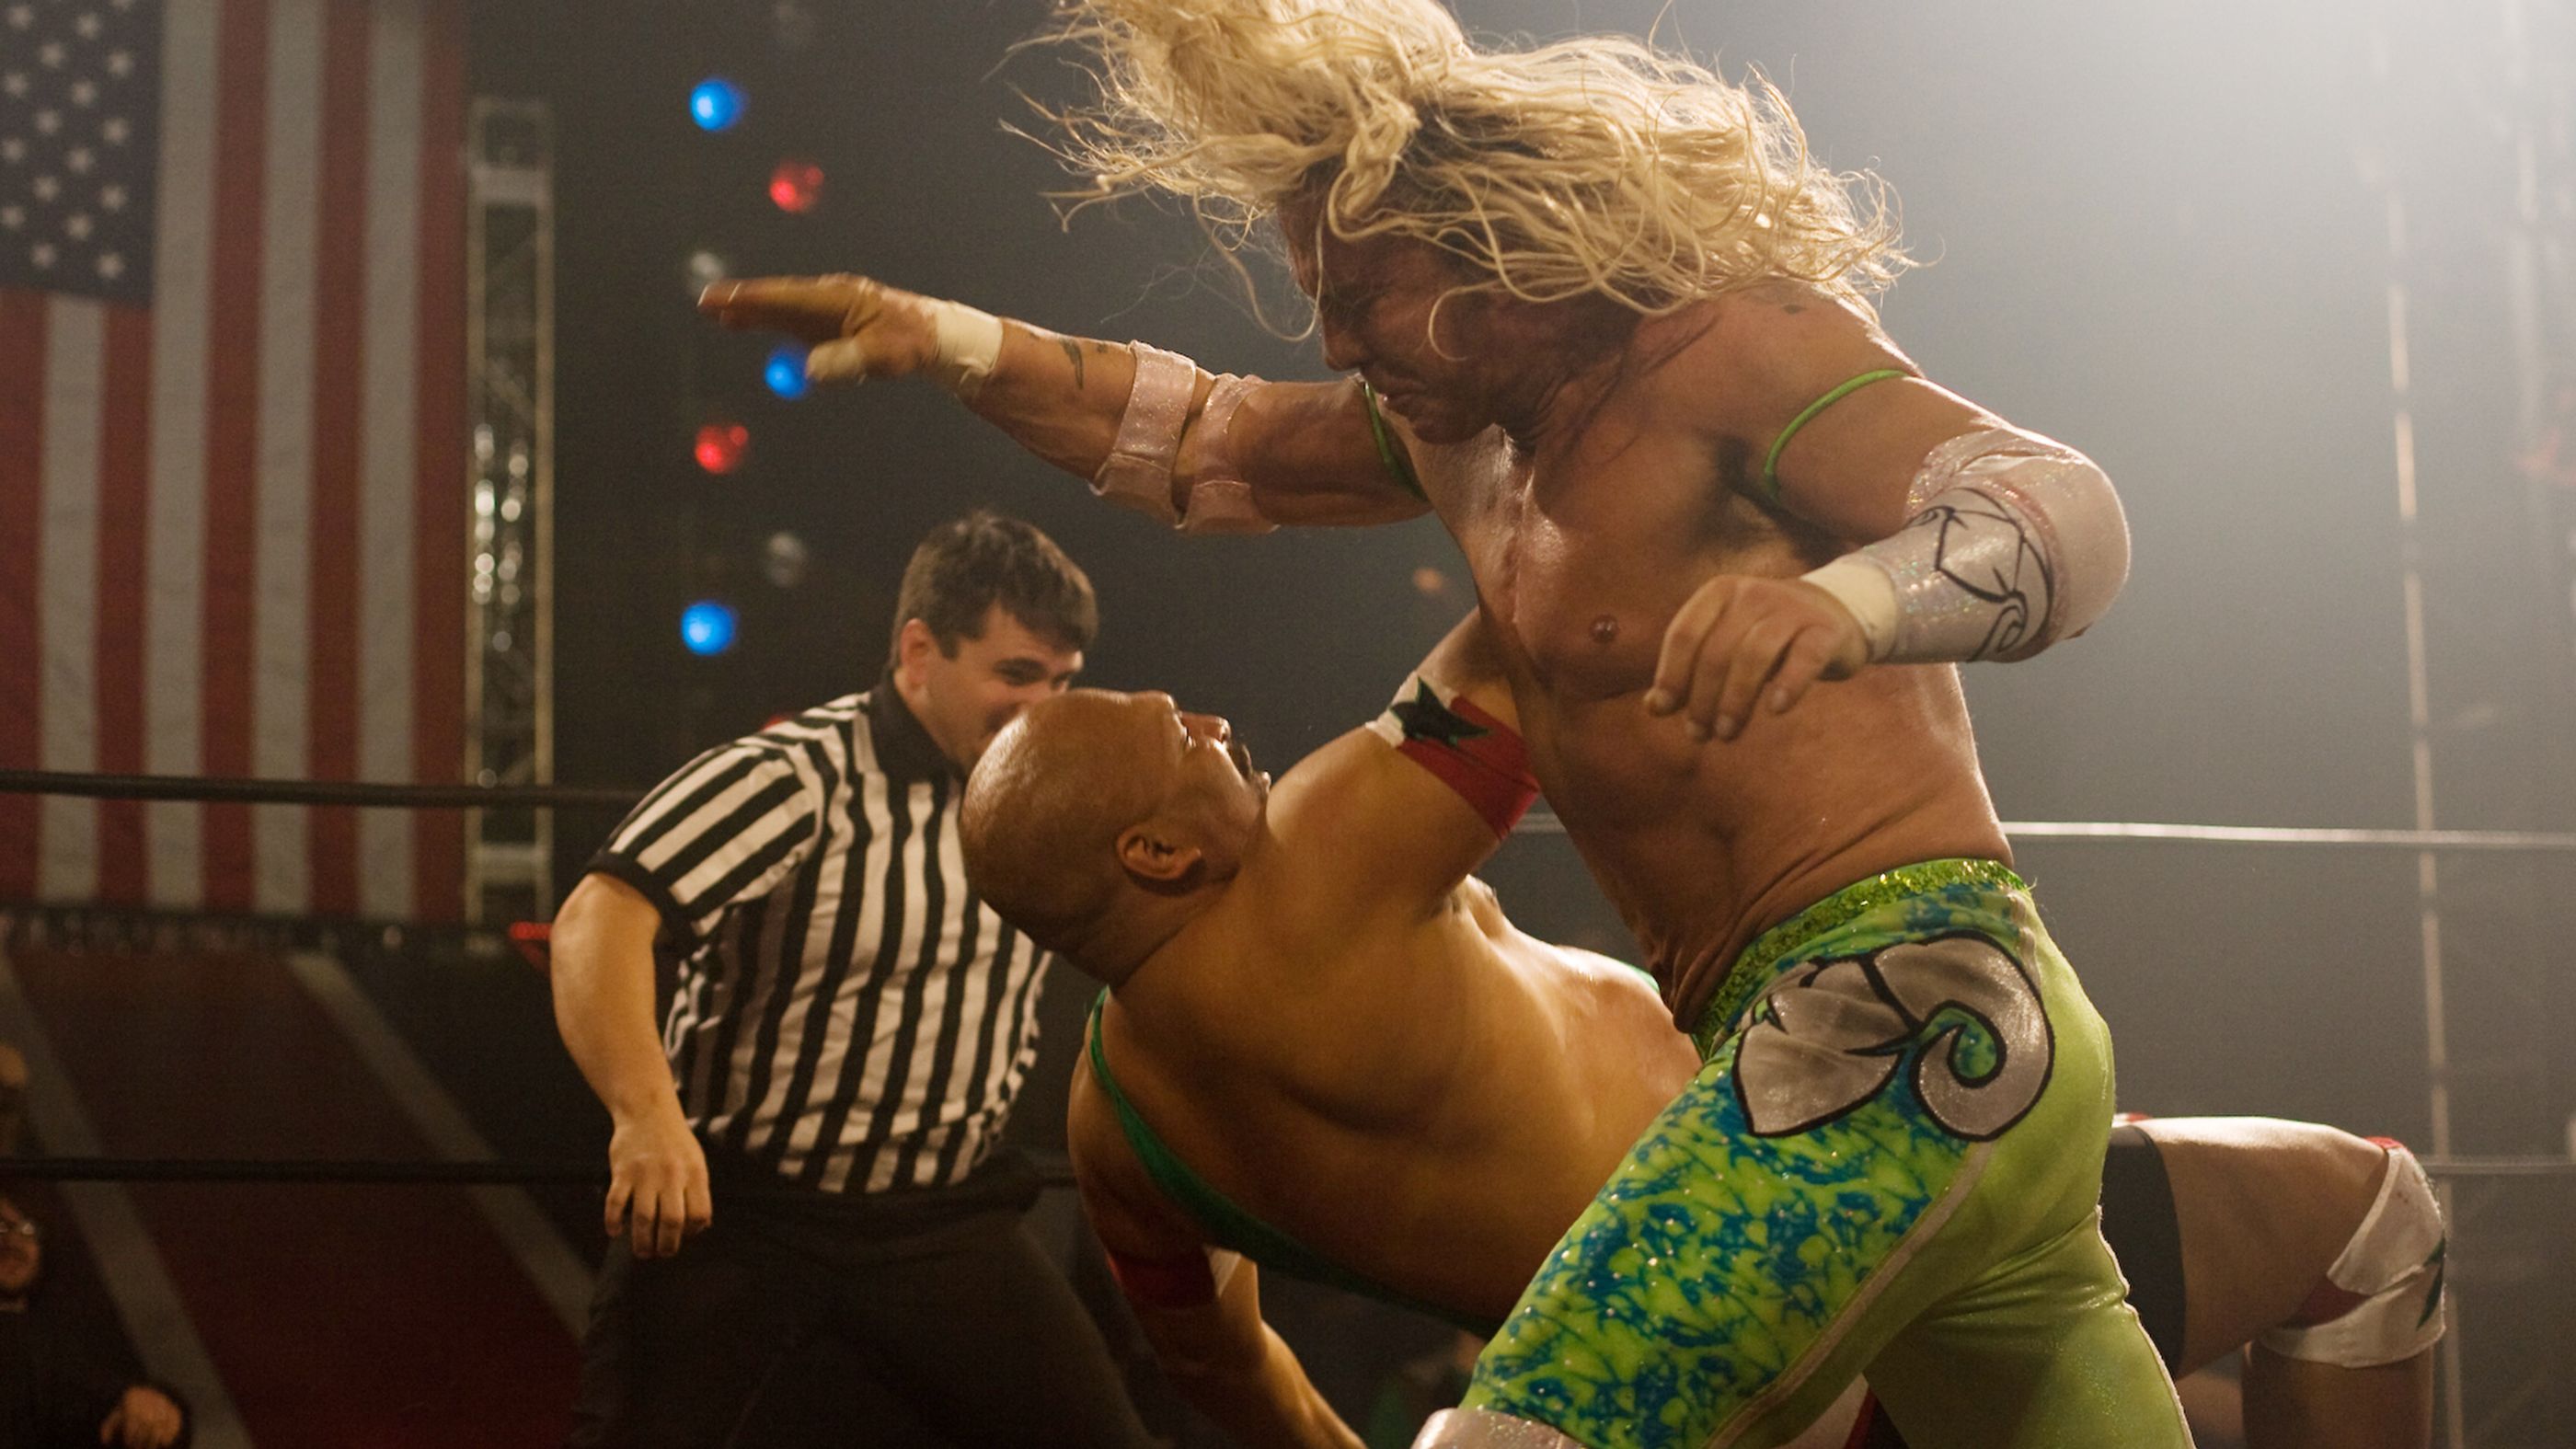 the-wrestler-2008